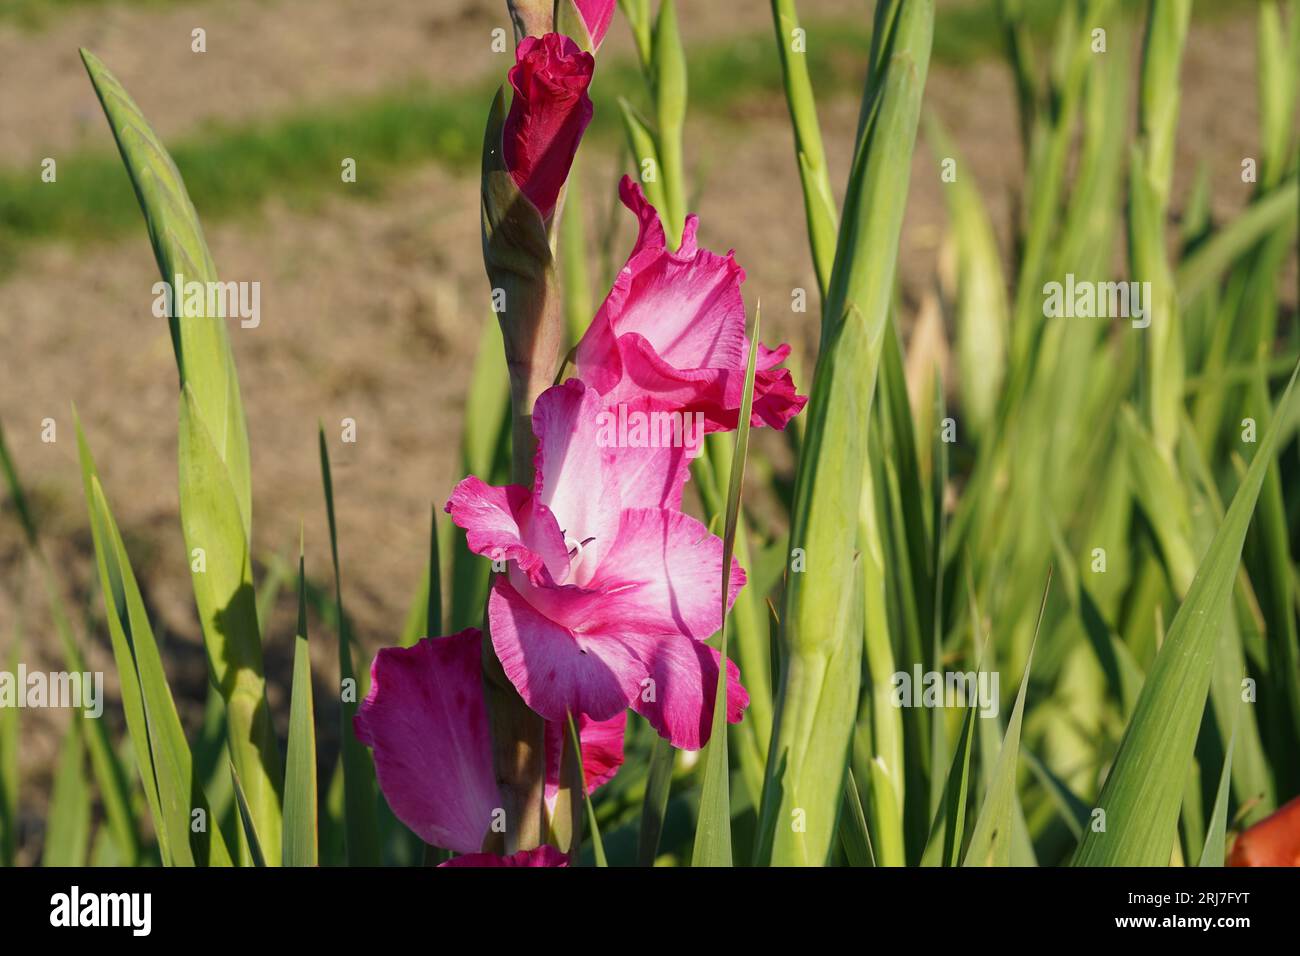 Gladiolus fiori ibridi di colore fucsia chiaro che crescono in condizioni naturali su un campo. Foto Stock